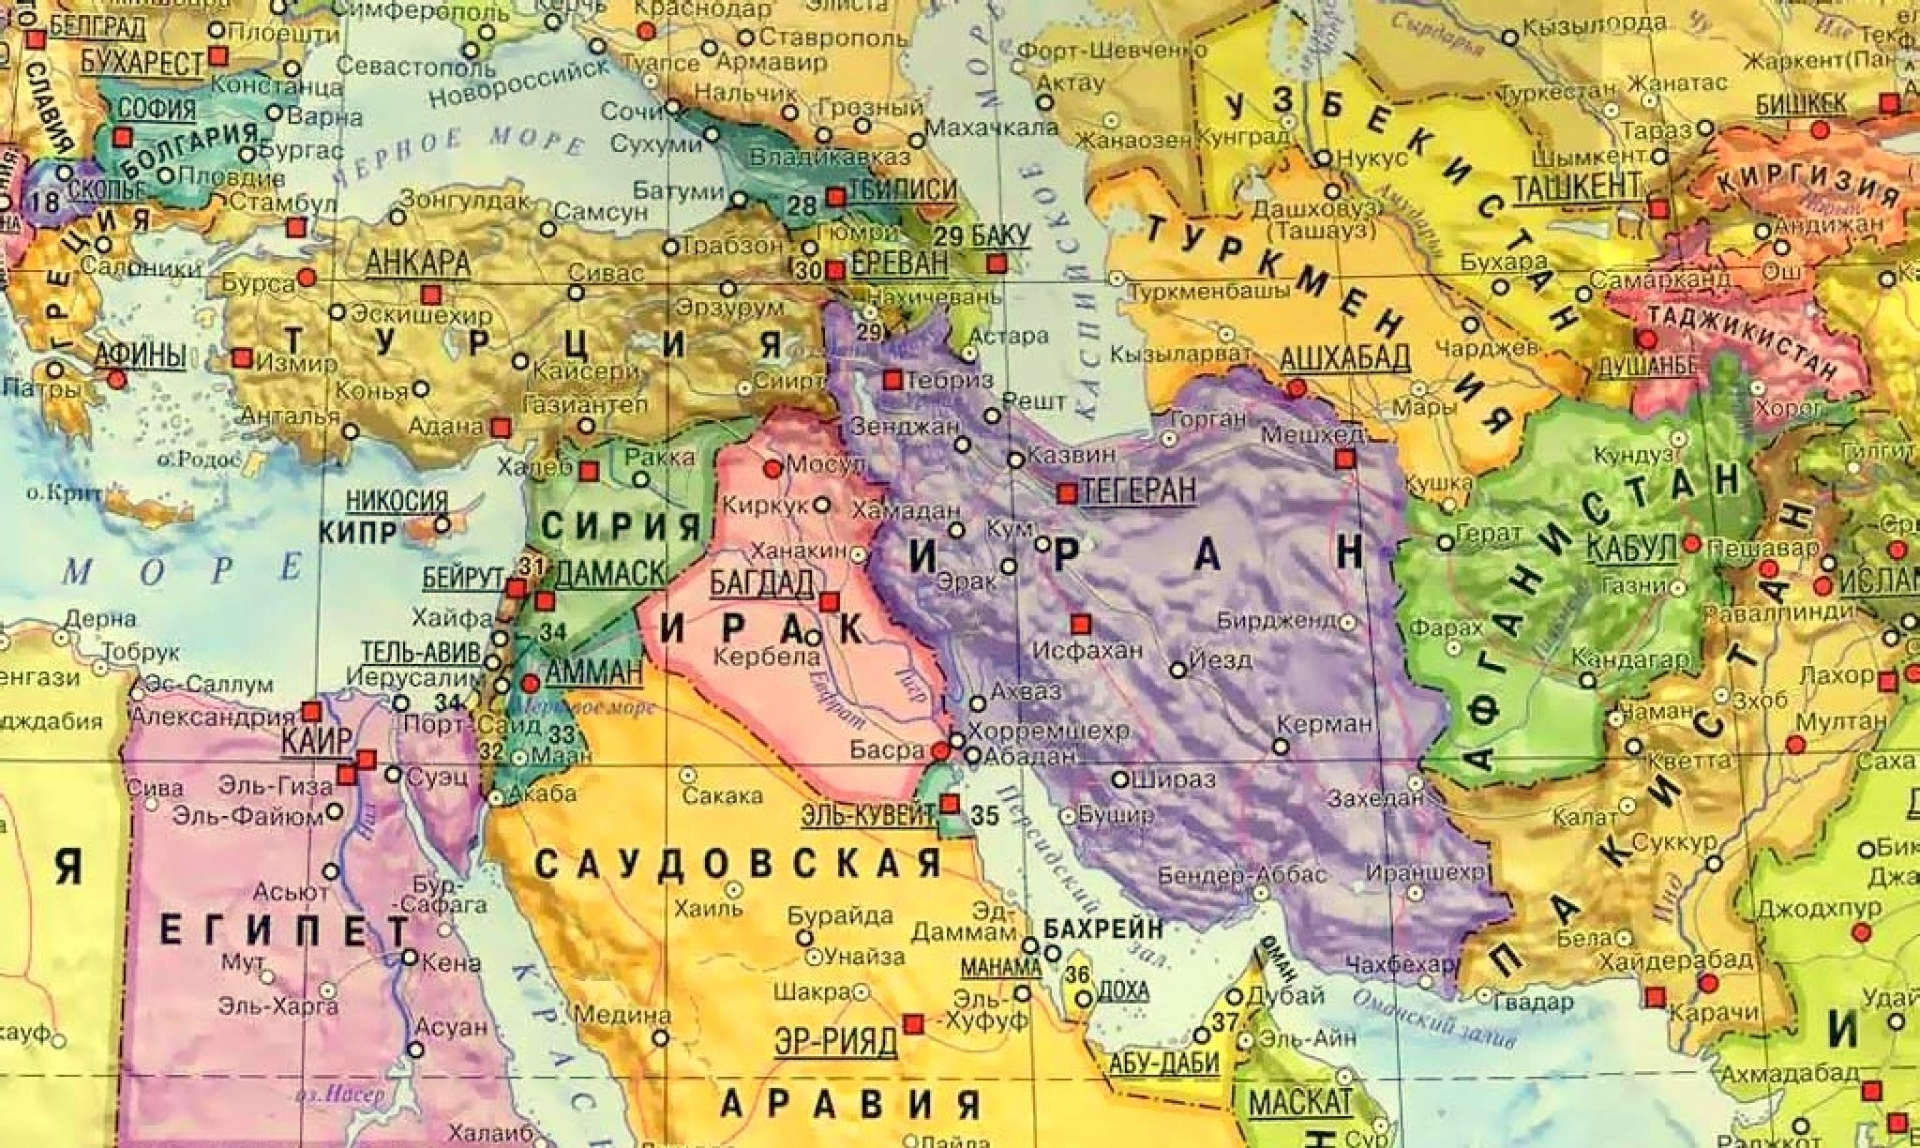 Хаджистан страна где находится. Карта Ирана и Ирака на русском языке географическая крупная. Иран Ирак Сирия на карте. Политическая карта ближнего Востока. Карта Ирана с соседними странами на русском языке.